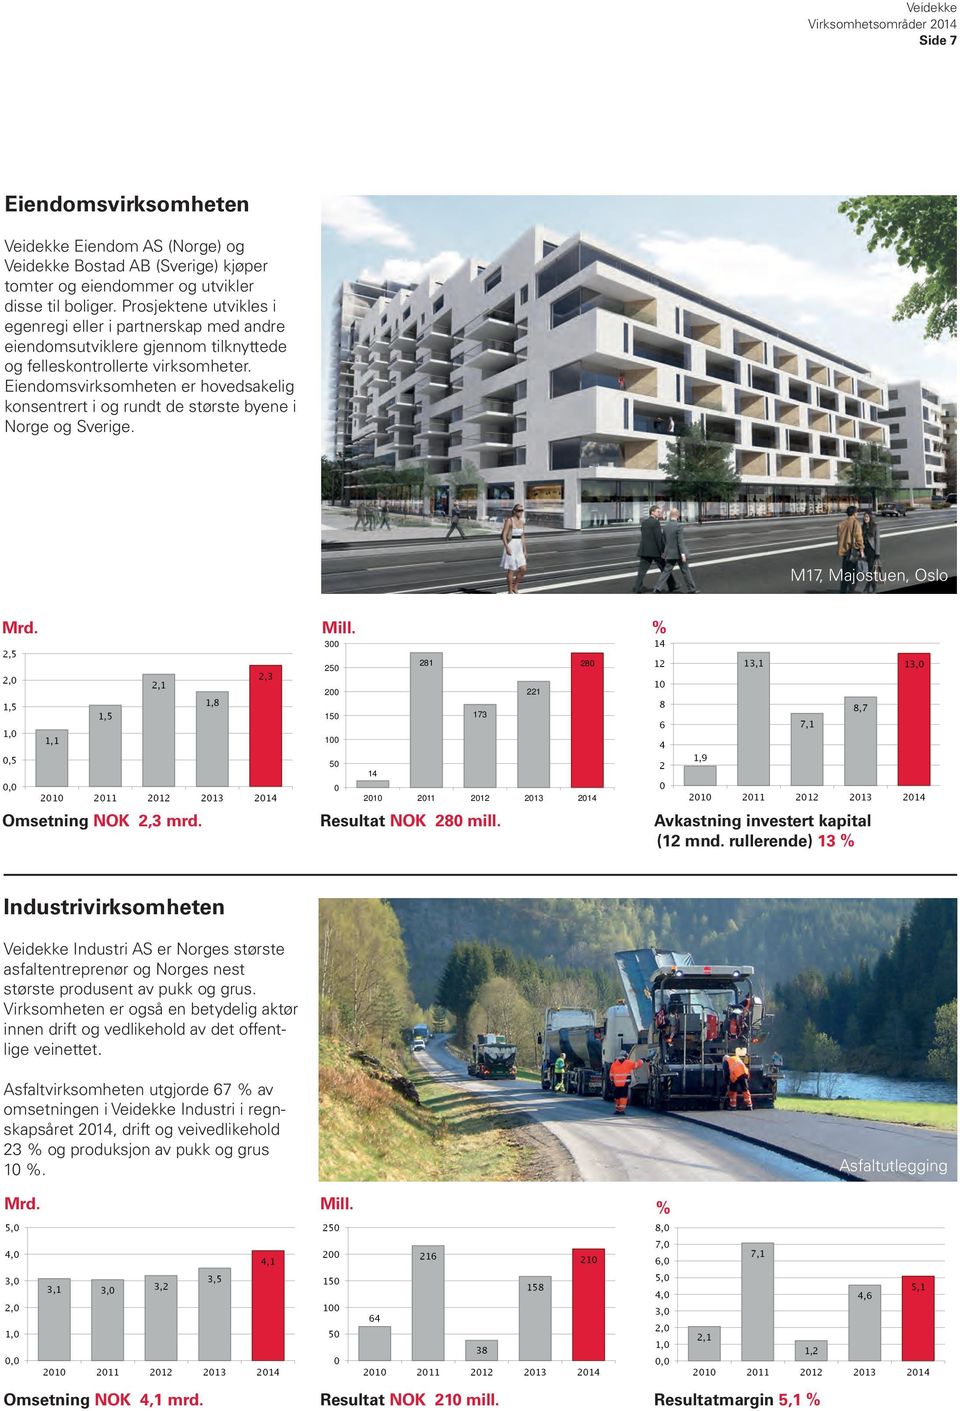 Eiendomsvirksomheten er hovedsakelig konsentrert i og rundt de største byene i Norge og Sverige. M17, Majostuen, Oslo Mrd. 2,5 2,0 1,5 1,0 0,5 0,0 1,1 1,5 2,1 1,8 2,3 2010 2011 2012 2013 2014 Mill.